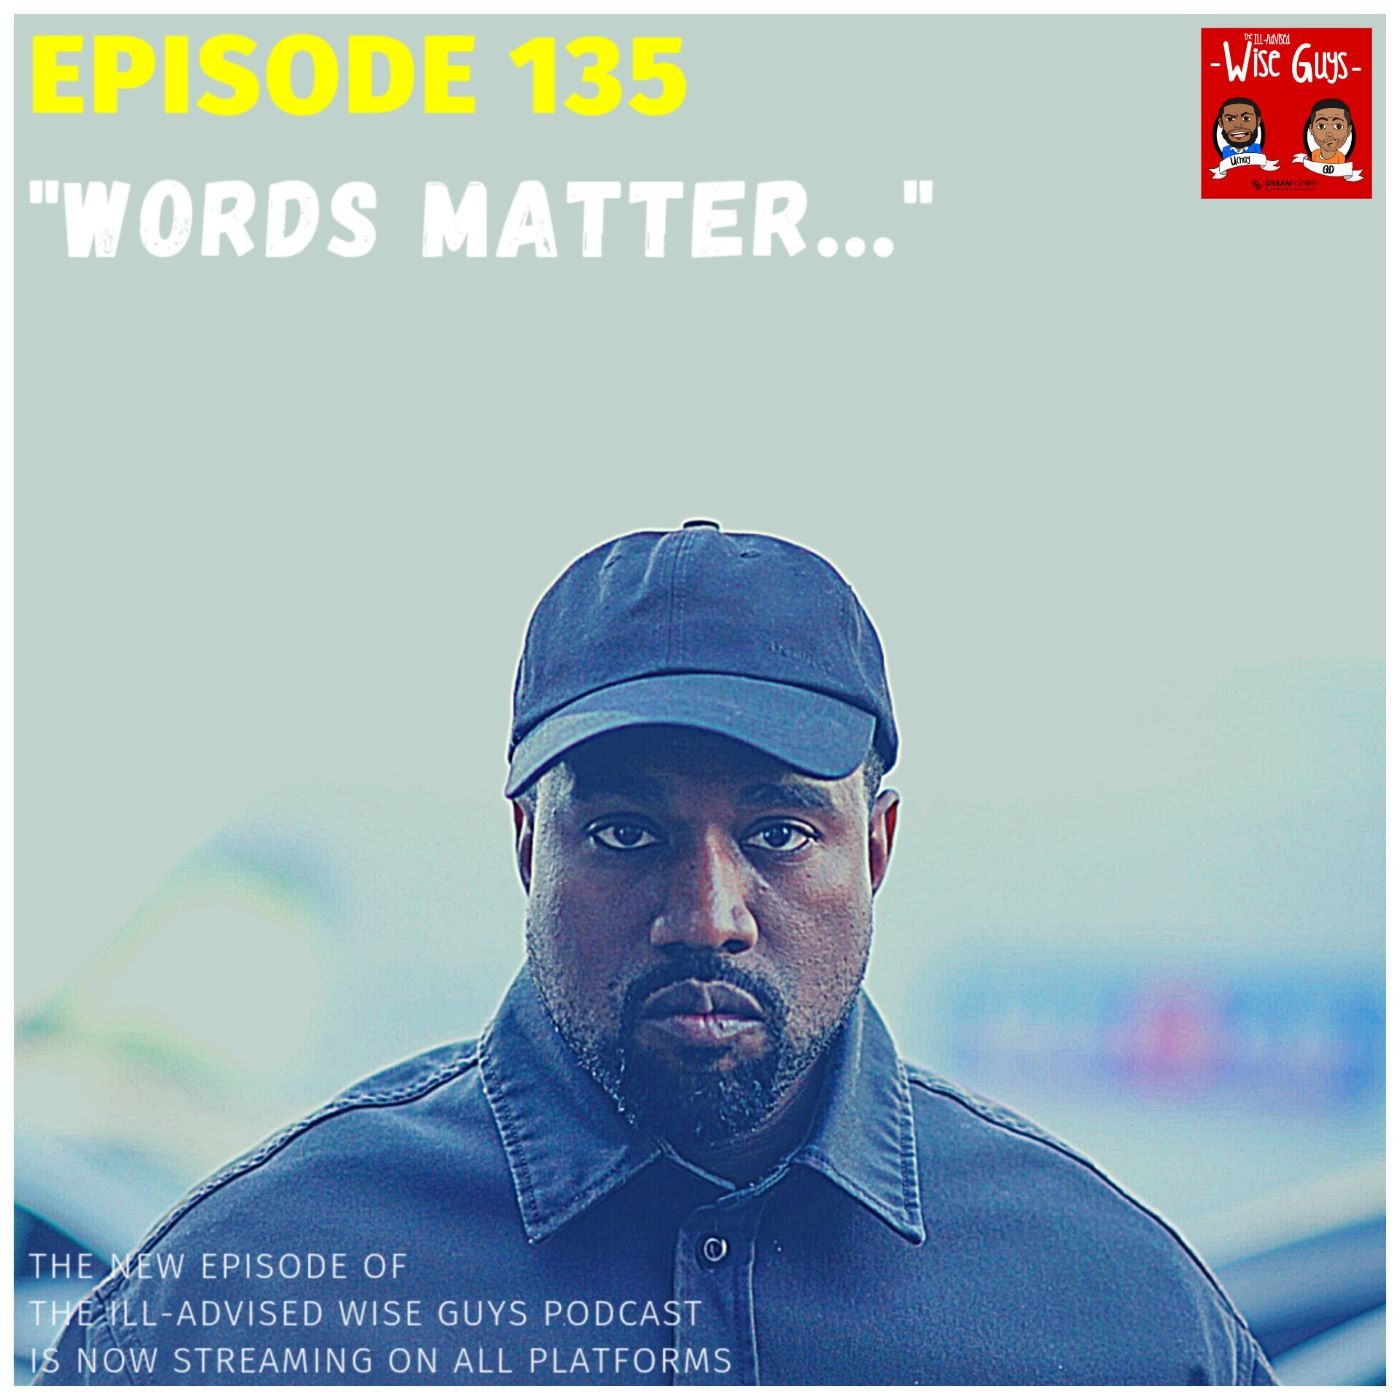 Episode 135 - "Words Matter..."